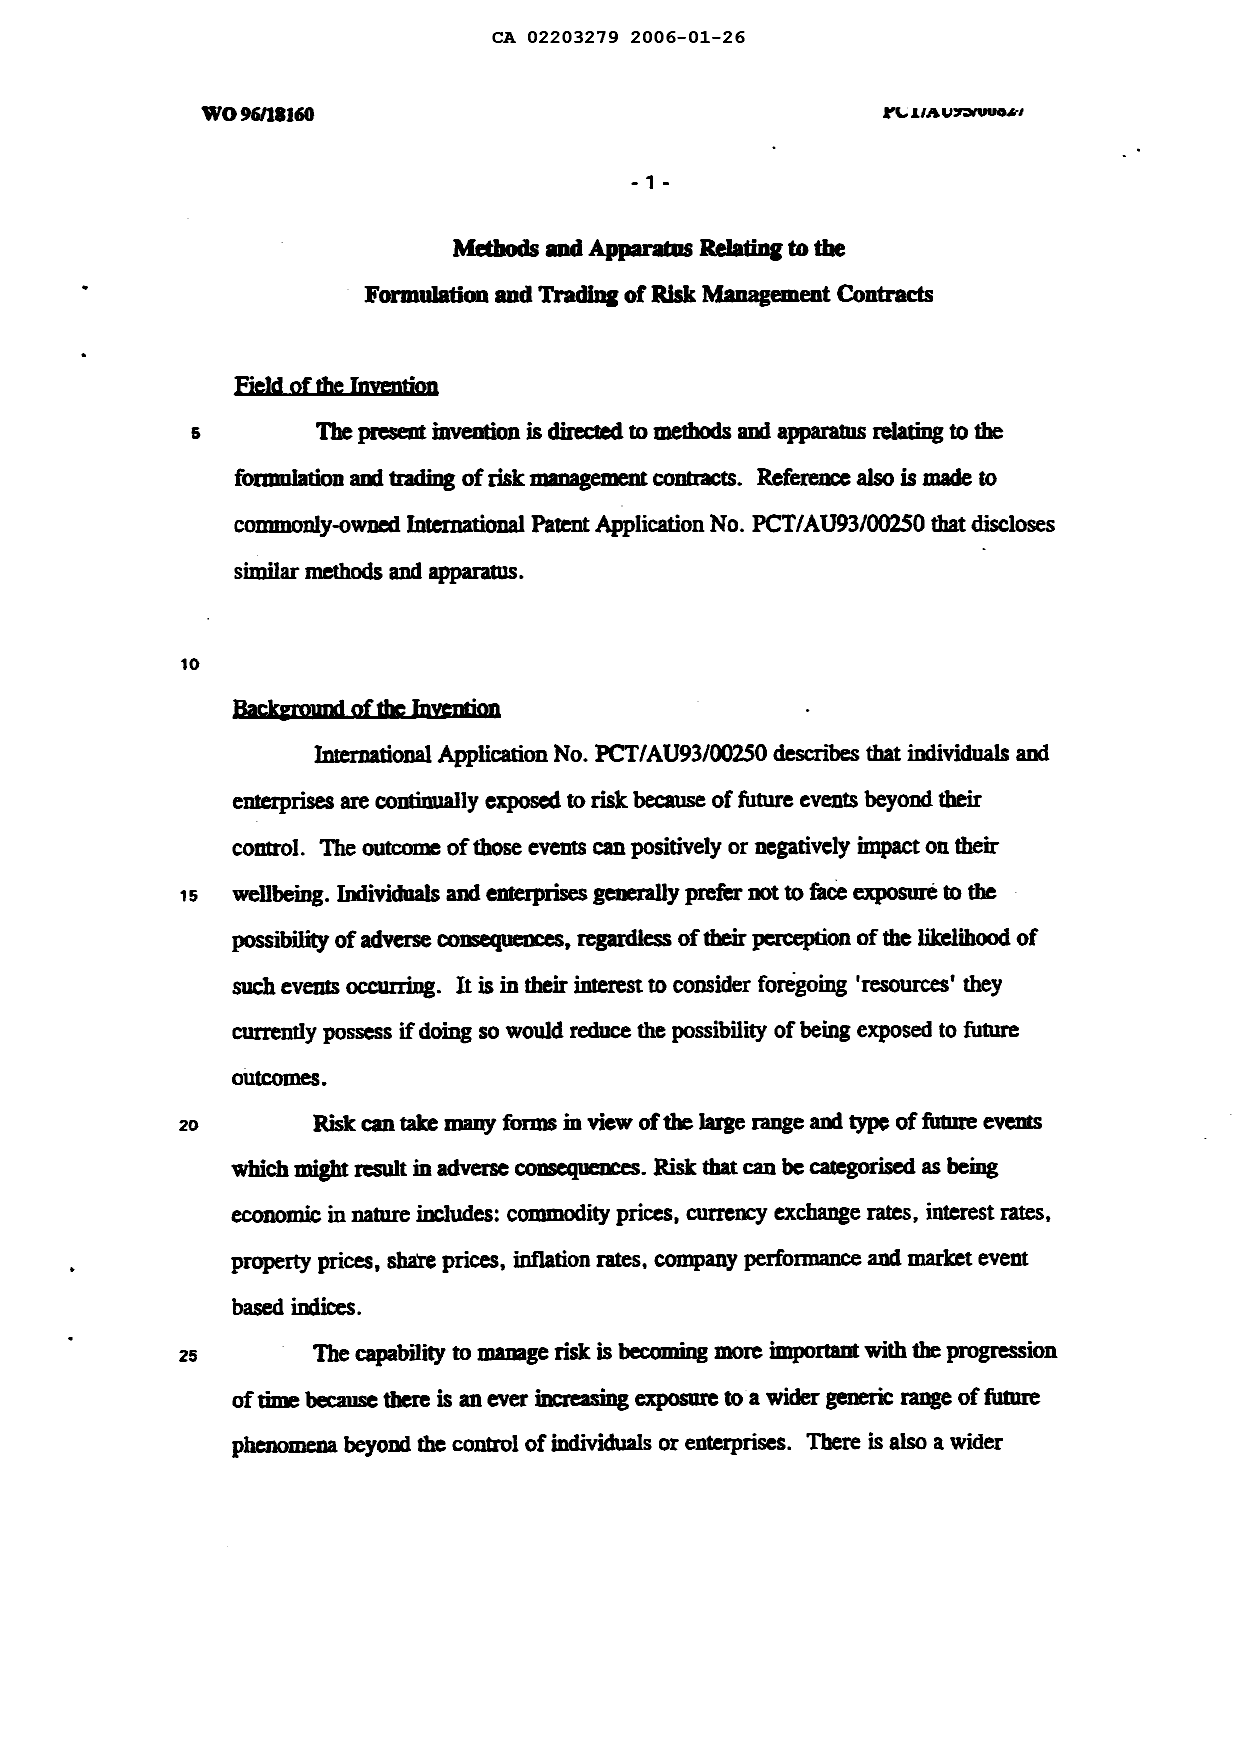 Canadian Patent Document 2203279. Description 20051226. Image 1 of 49